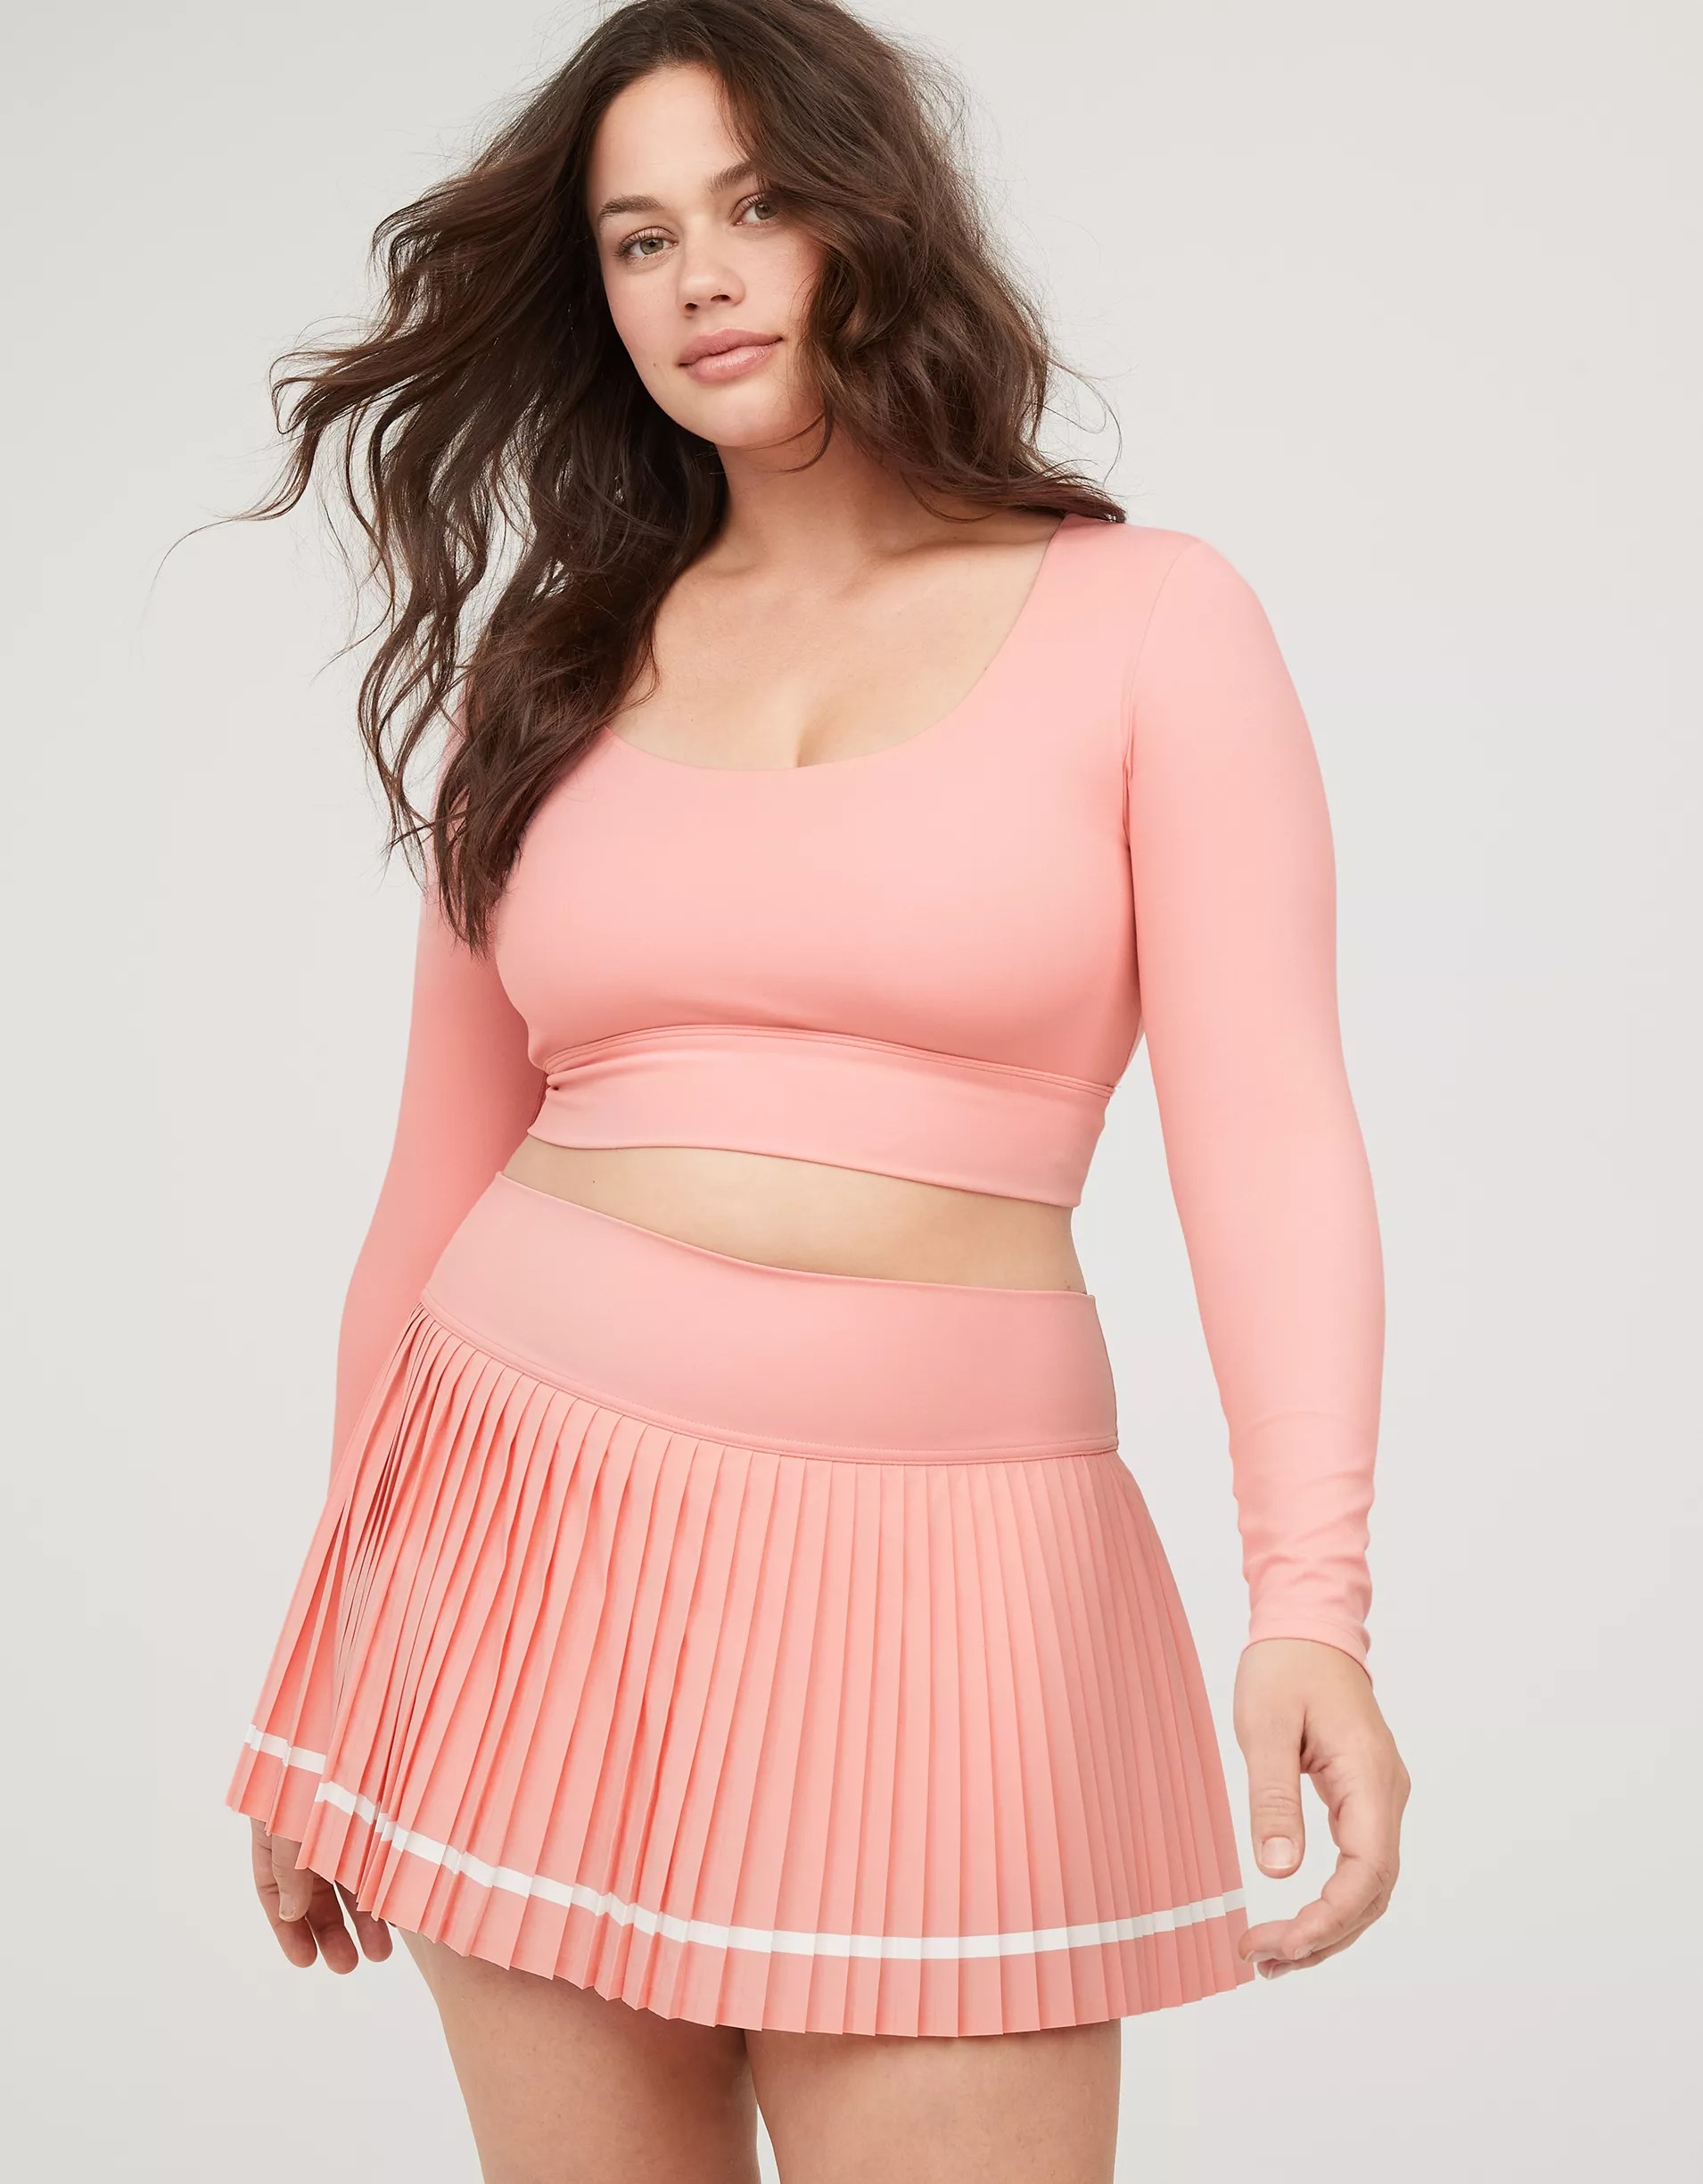 Model wearing pink activewear set